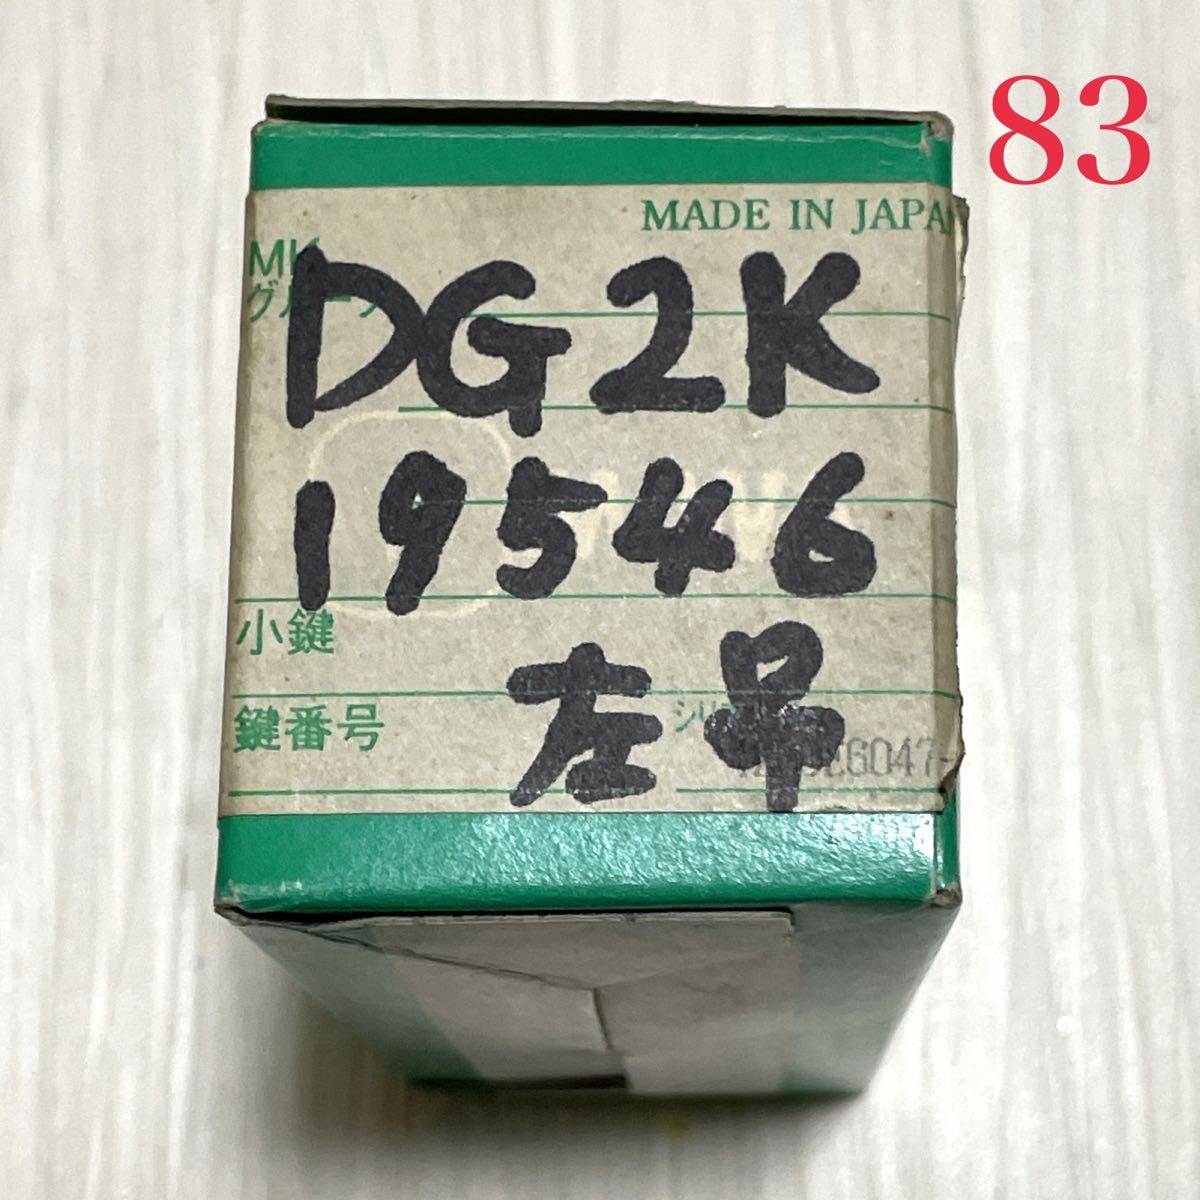 ☆最終価格です☆【83】MIWA 美和ロック DG-2K-19546 左吊 キー３本